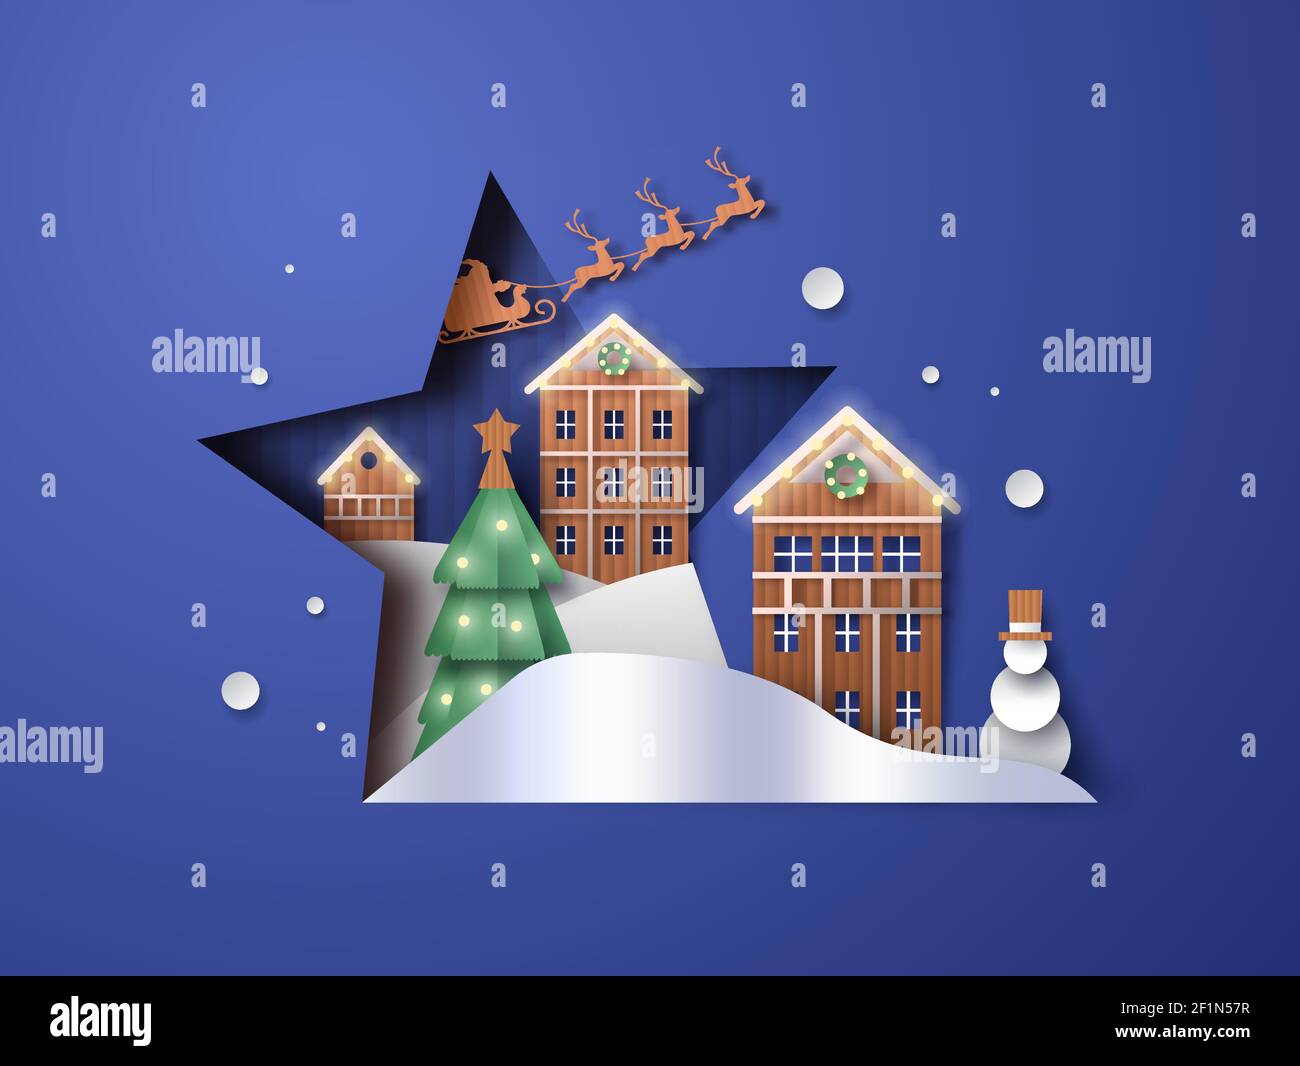 Allegra illustrazione di Natale del paesaggio invernale di papercut all'interno del taglio stellare. 3D carta Craft babbo natale, slitta, pino, pupazzo di neve e villa casa Illustrazione Vettoriale